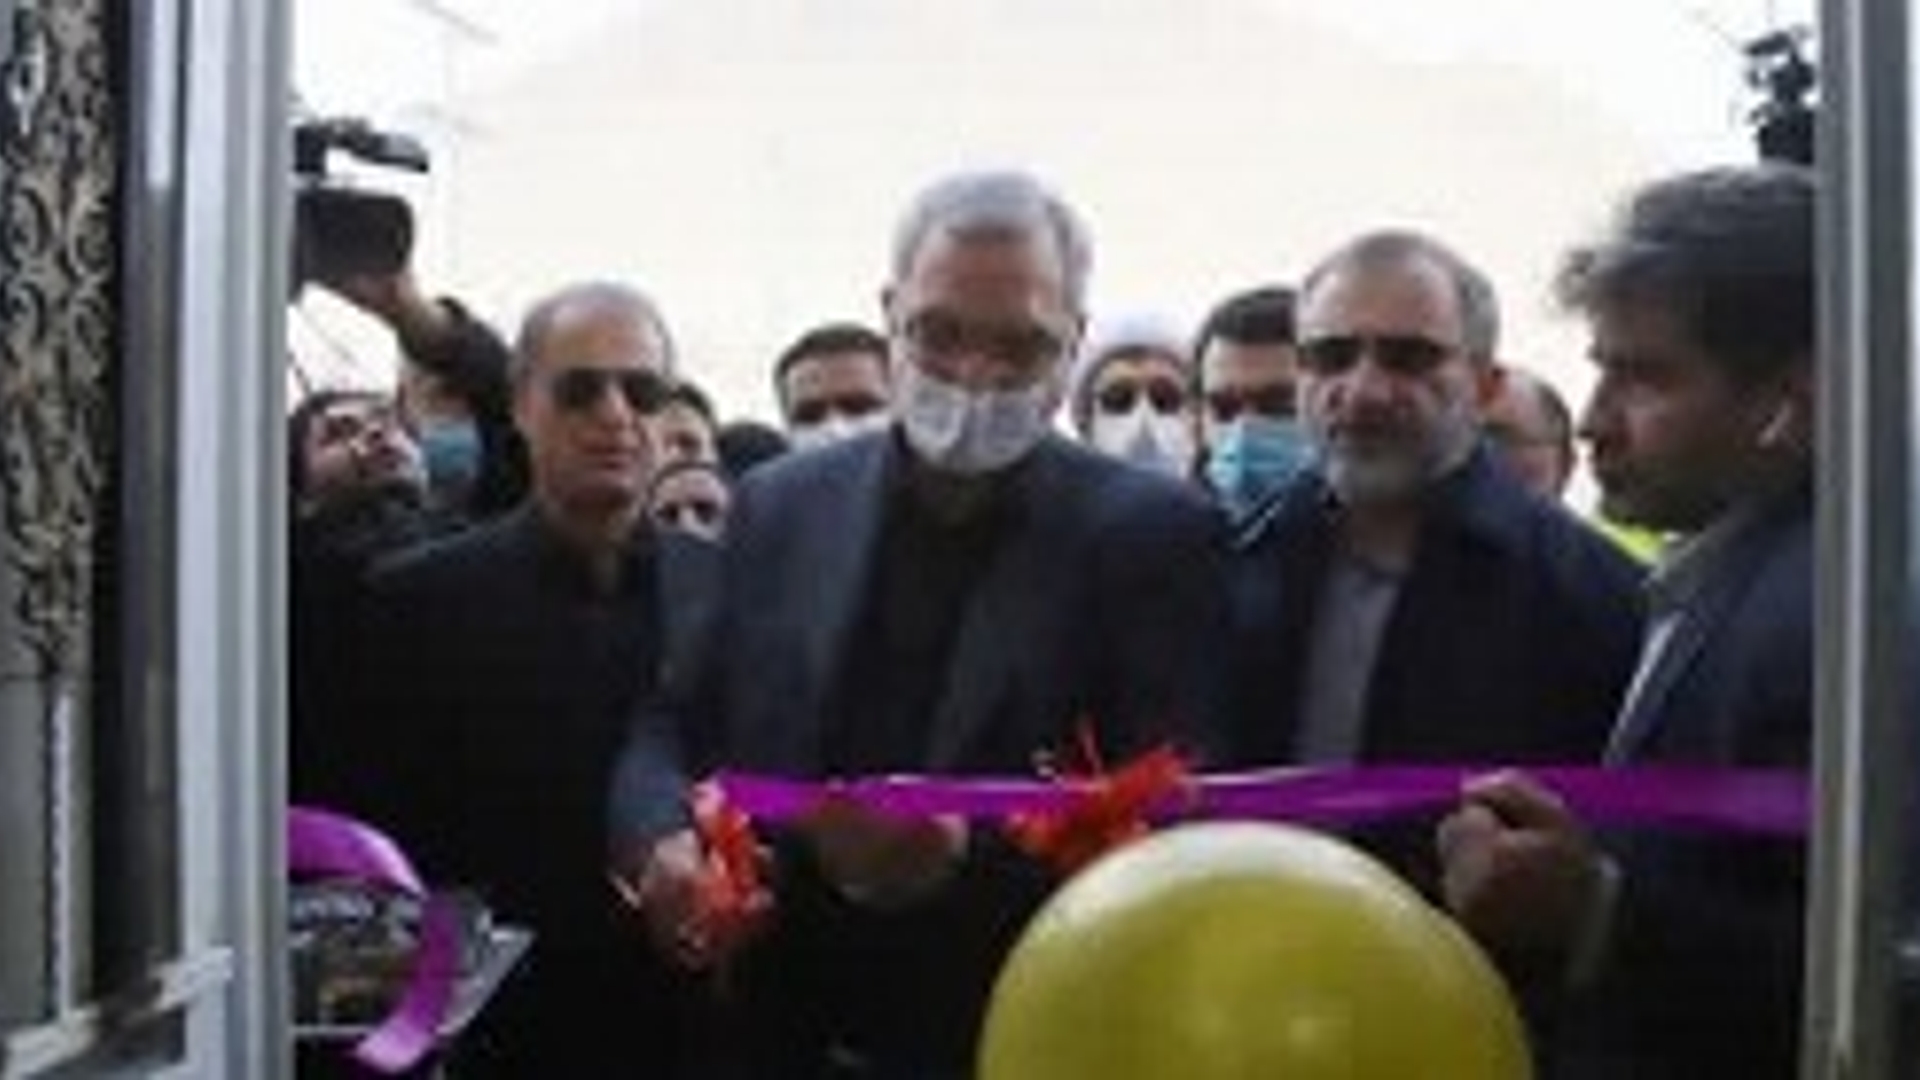 افتتاح و بهره برداری از پایگاه اورژانس شهر توره با حضور وزیر بهداشت، درمان و آموزش پزشکی و استاندار مرکزی